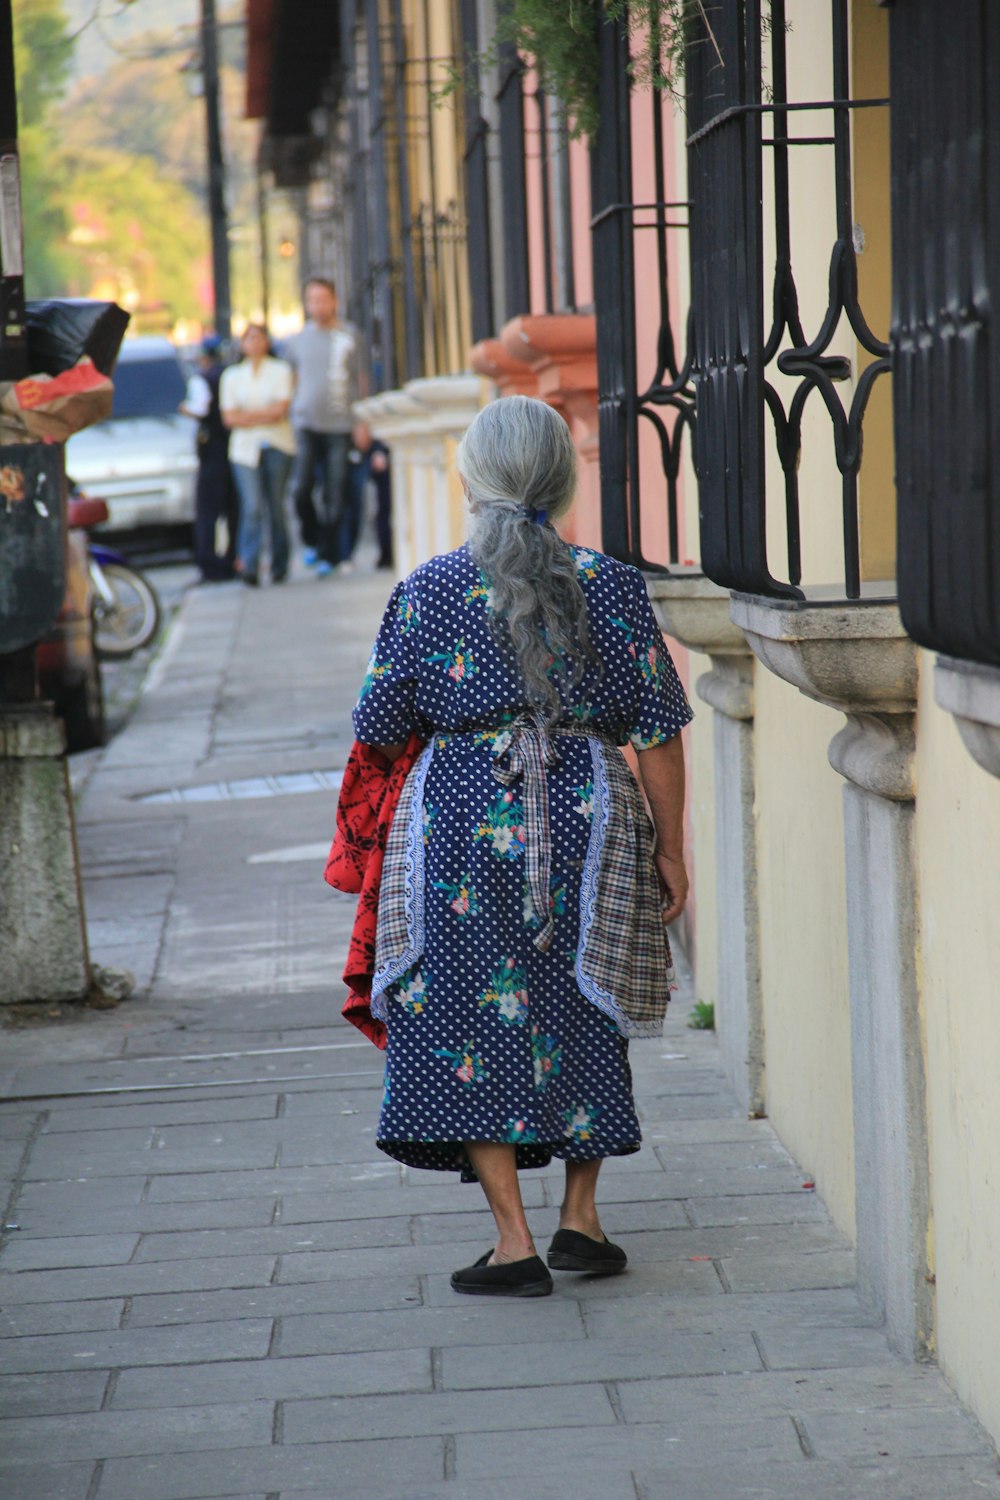 Frau in rotem und schwarzem Kleid, die tagsüber auf dem Bürgersteig spazieren geht